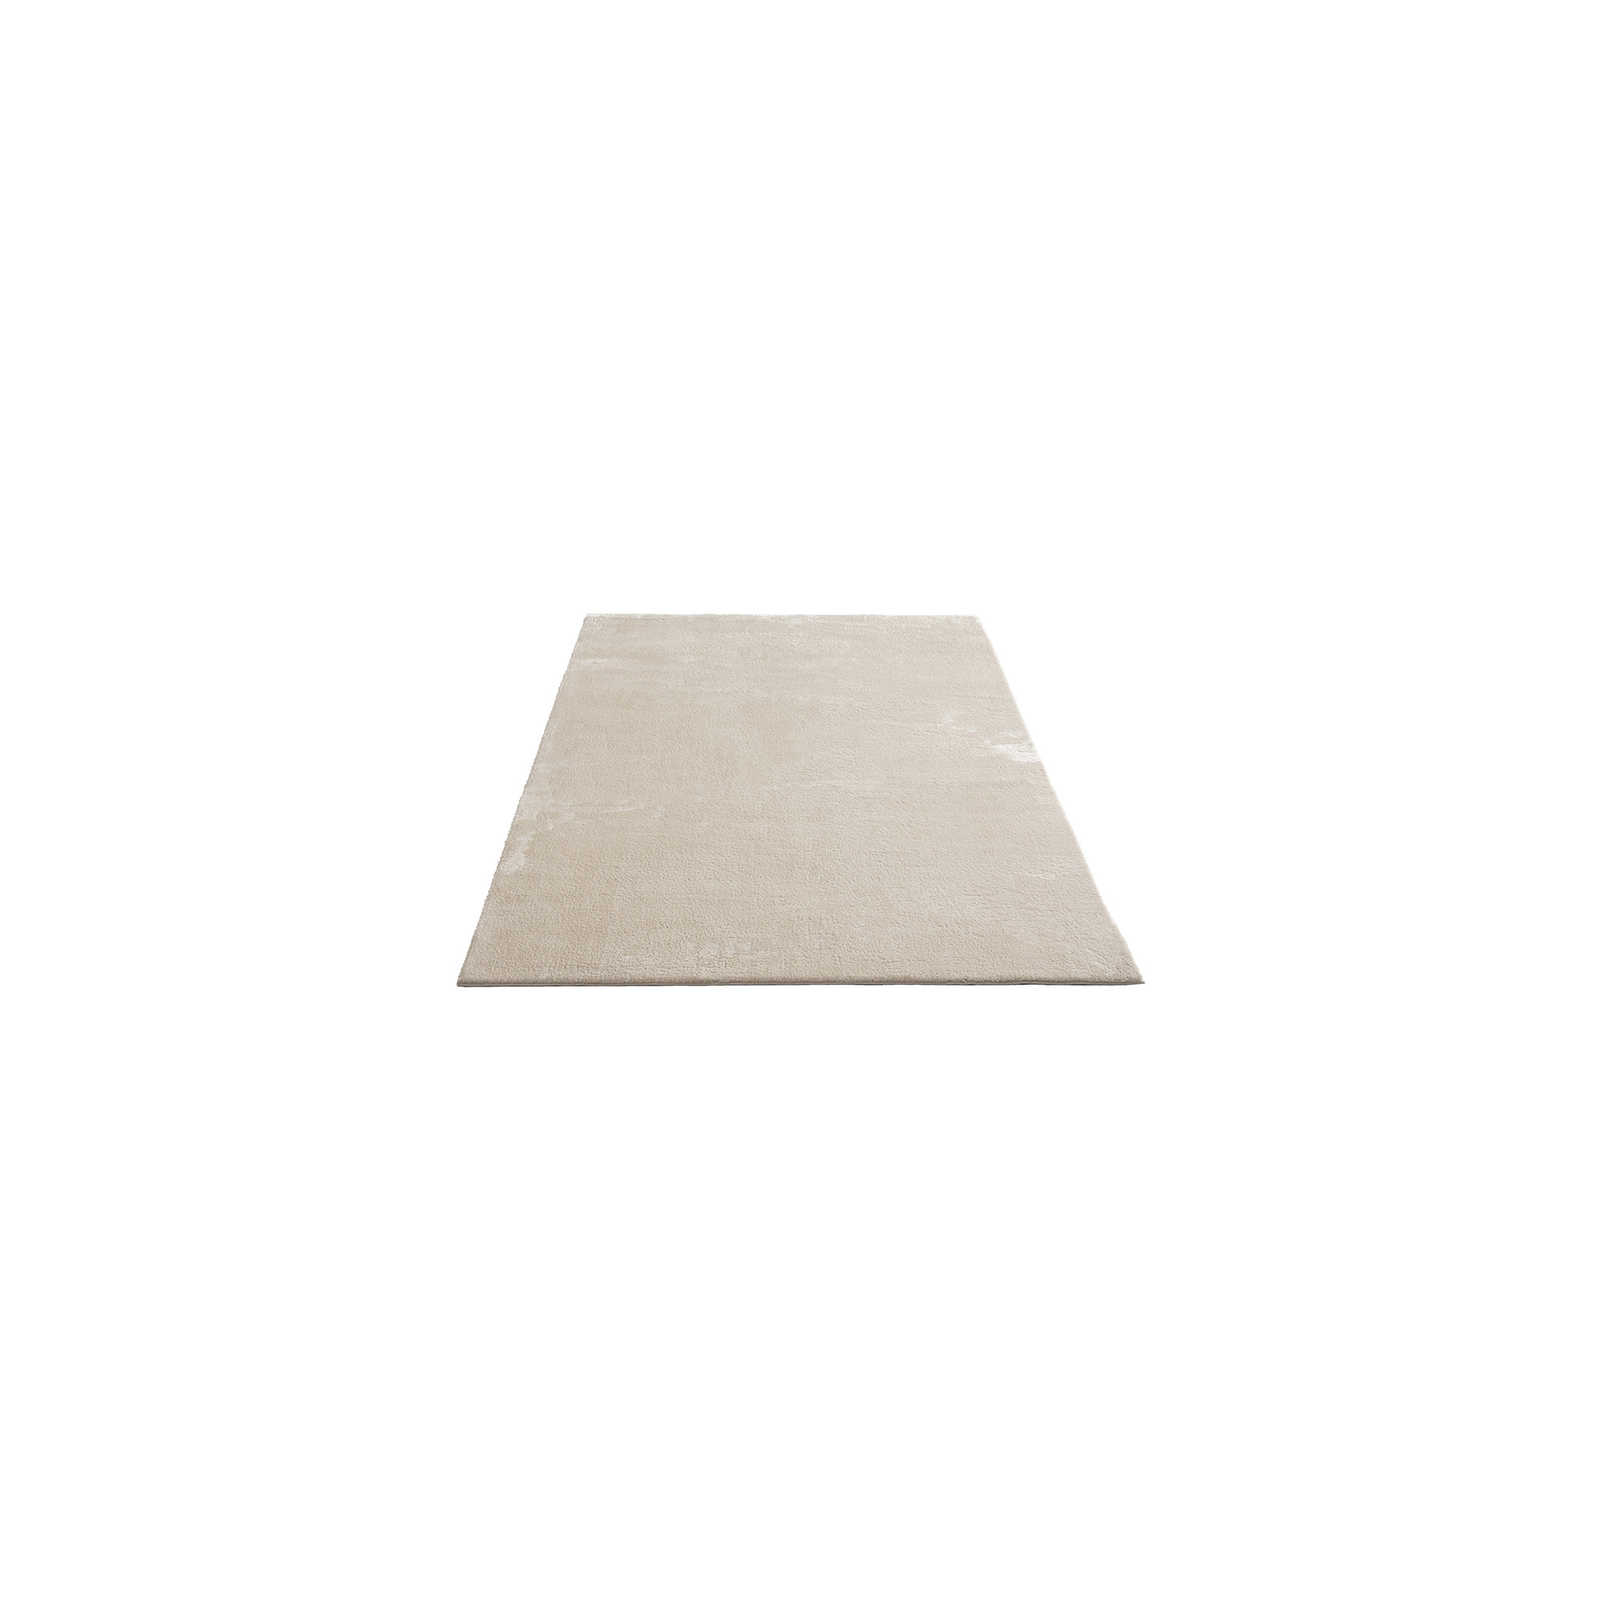 Weicher Hochflor Teppich in Beige – 150 x 80 cm
